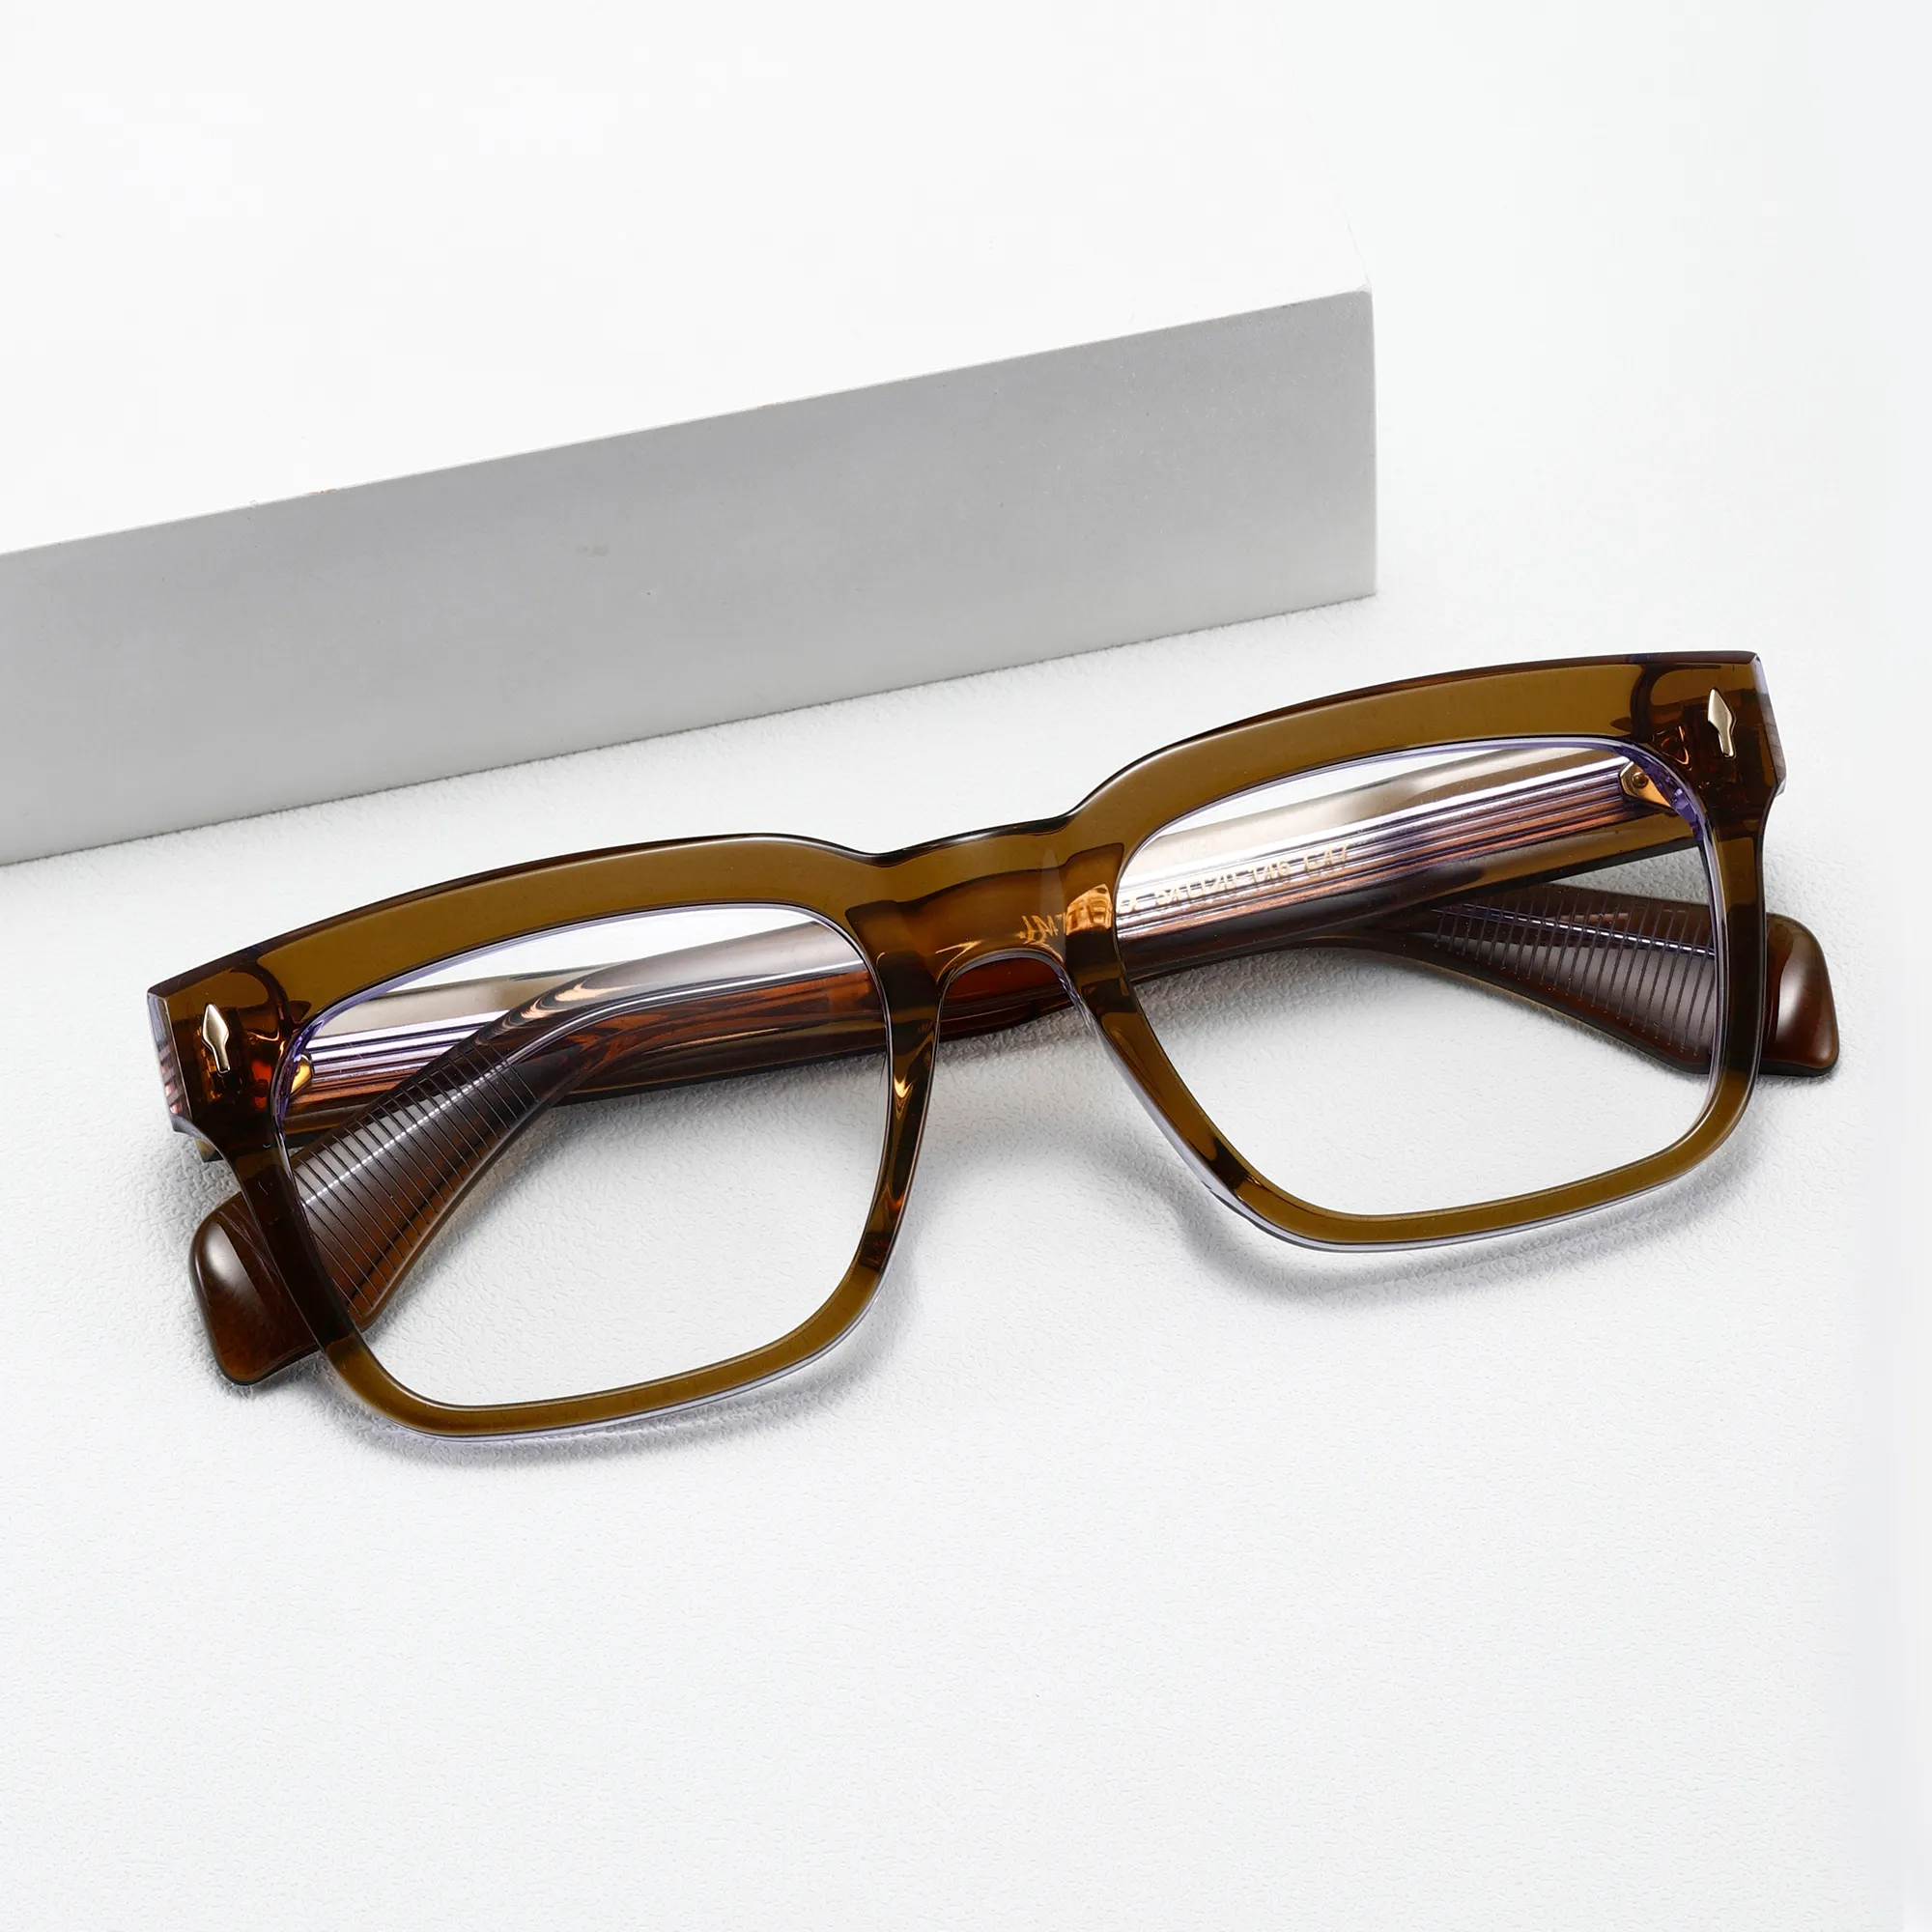 Figroadユニセックスブルーライトブロッキング眼鏡ブルーカットレンズ付き高品質スクエアフレームメガネ新着読書用